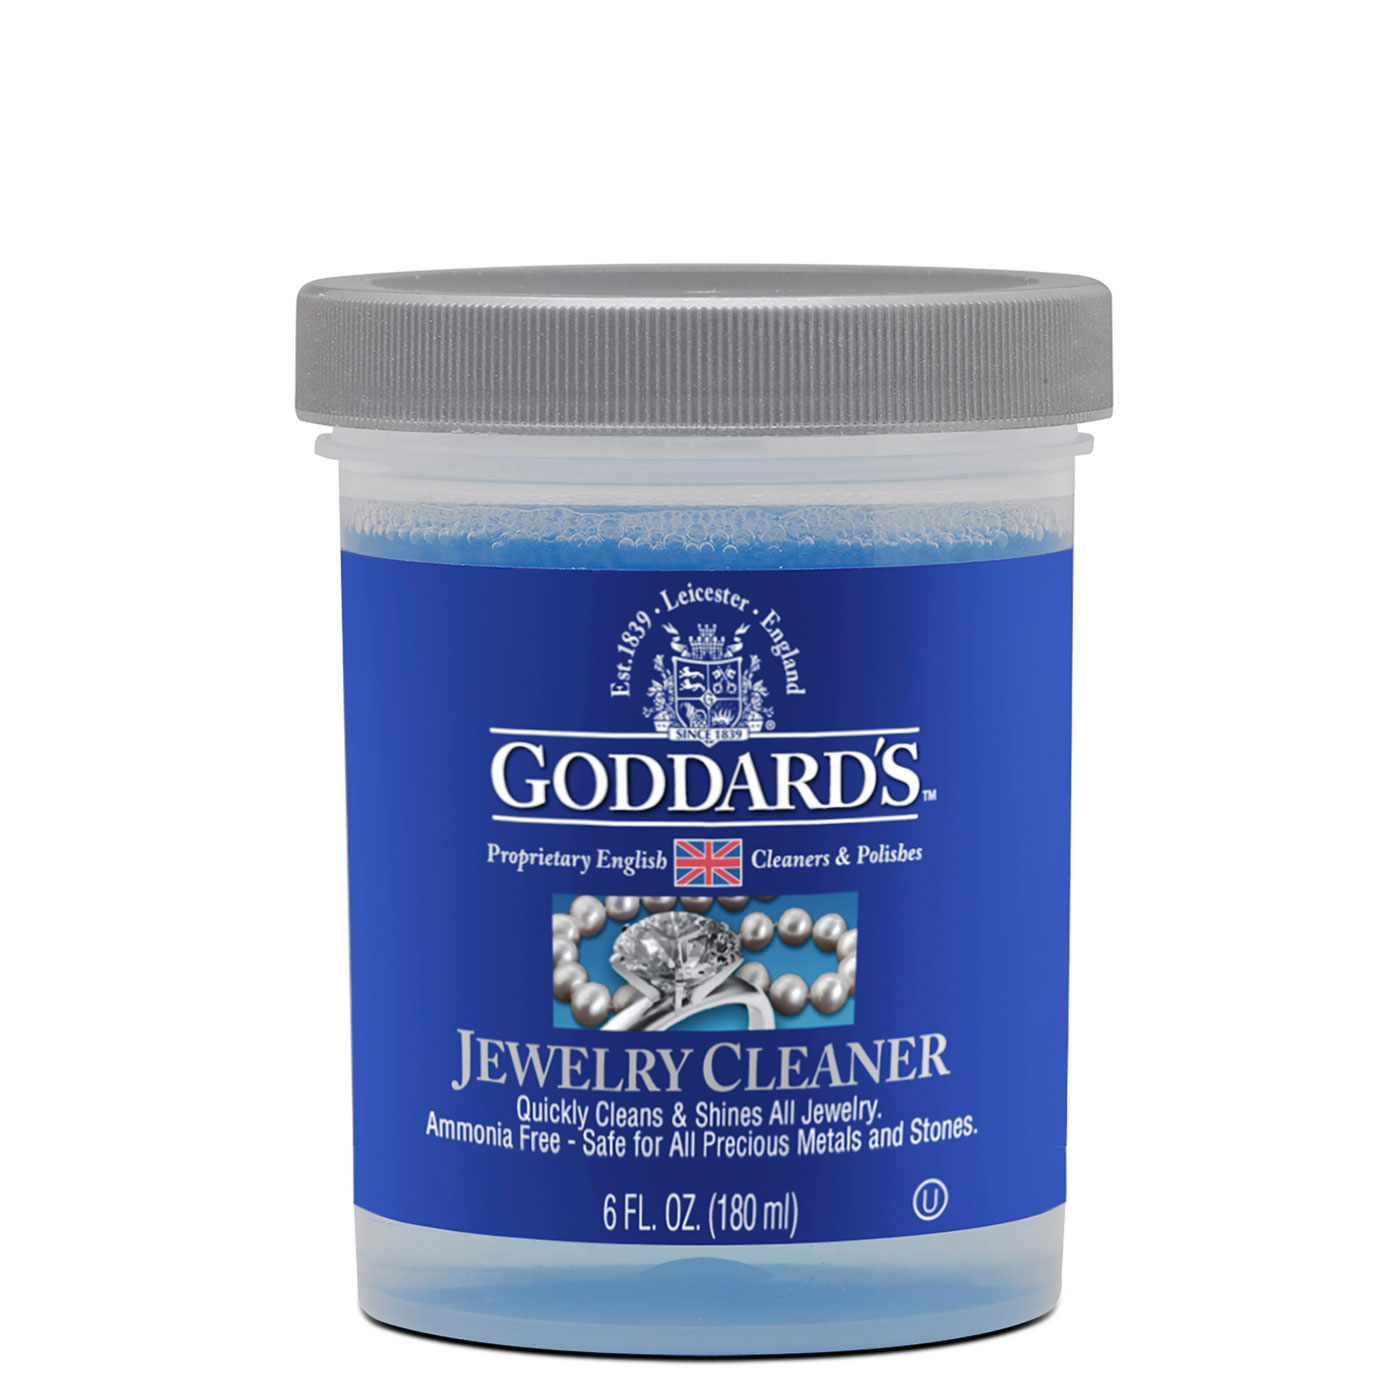 Silver Jewellery Cleaner Liquid – Jewel Stuffs